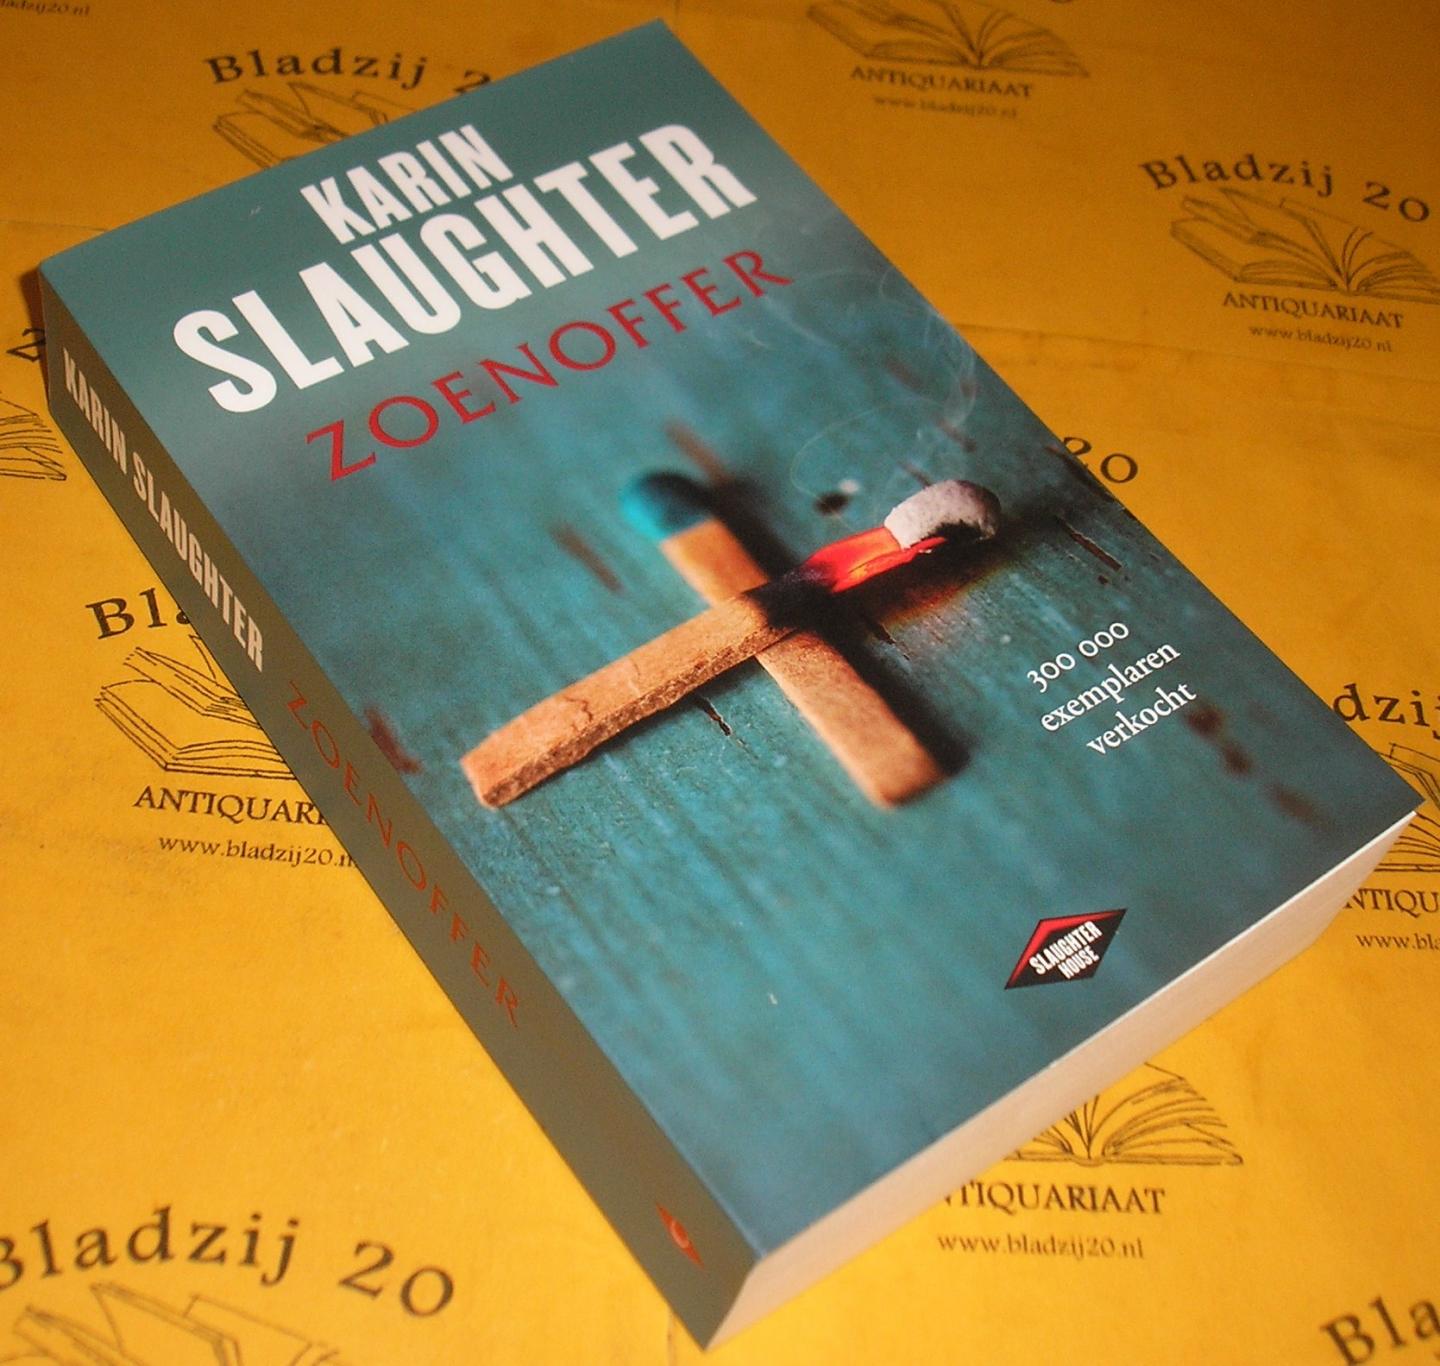 Slaughter, Karin. - Zoenoffer.